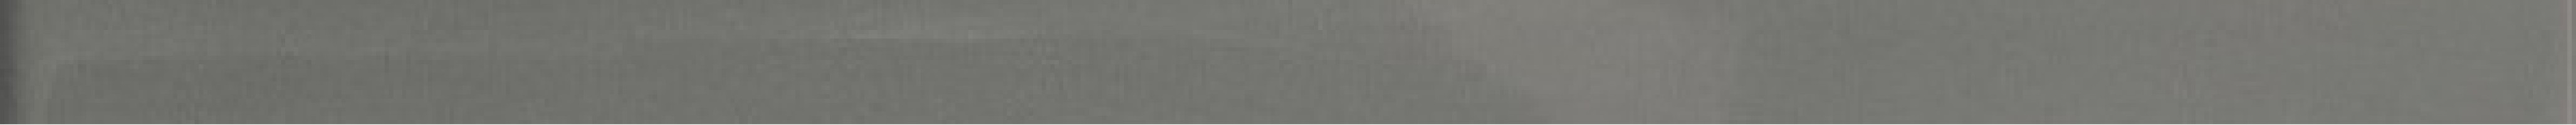 Бордюр CSAQRSBG15 Q R Shadebrick Grey 1.5x30 Sant Agostino